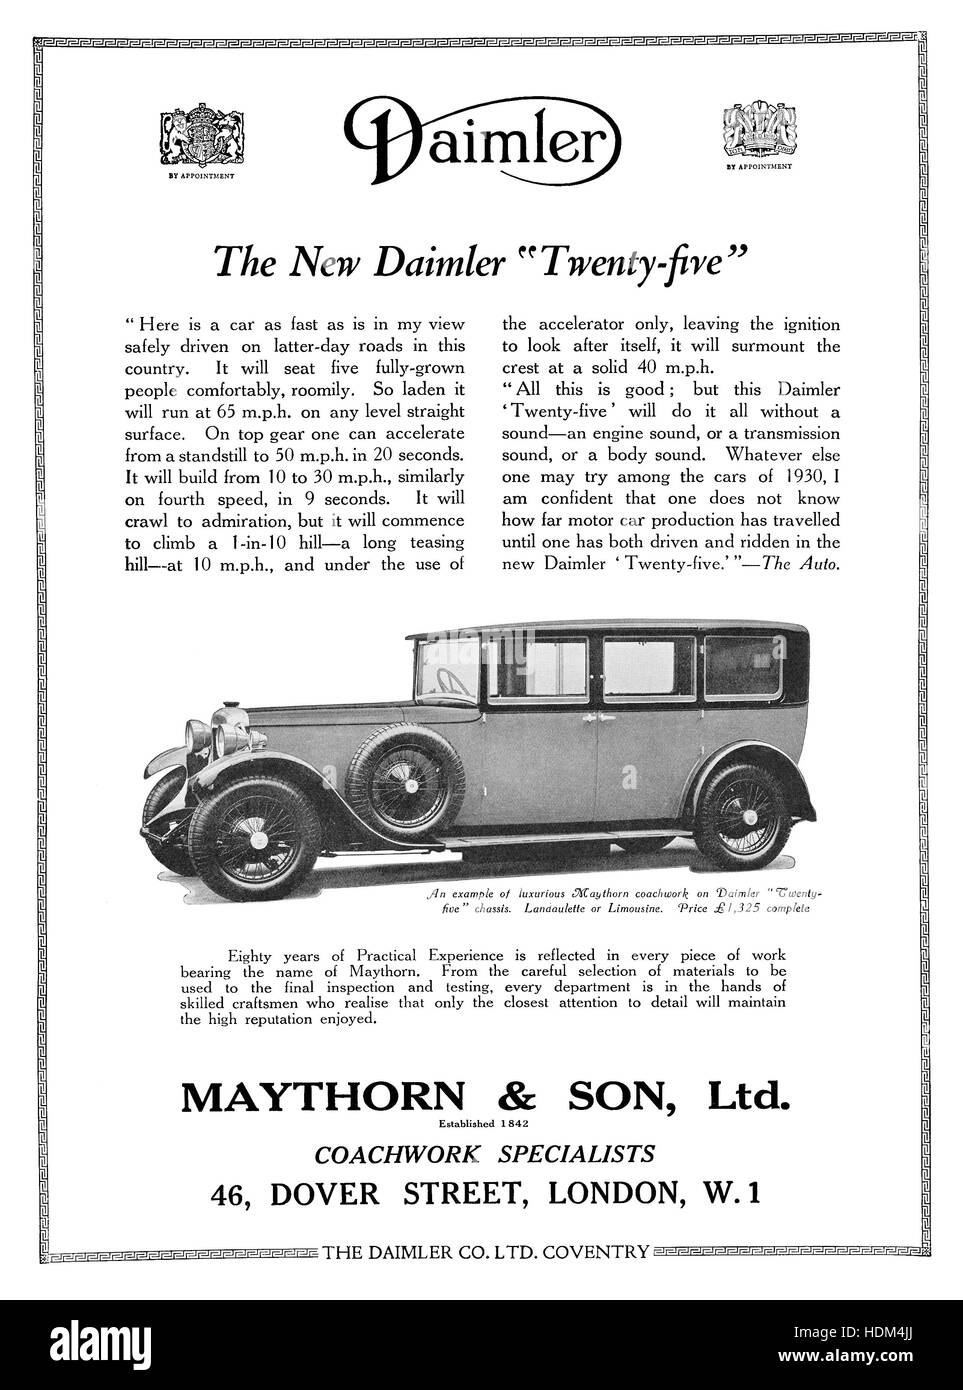 1930 britischer Werbung für die Daimler Twenty - Five Motorwagen mit Karosserie von Maythorn & Sohn Ltd. Stockfoto